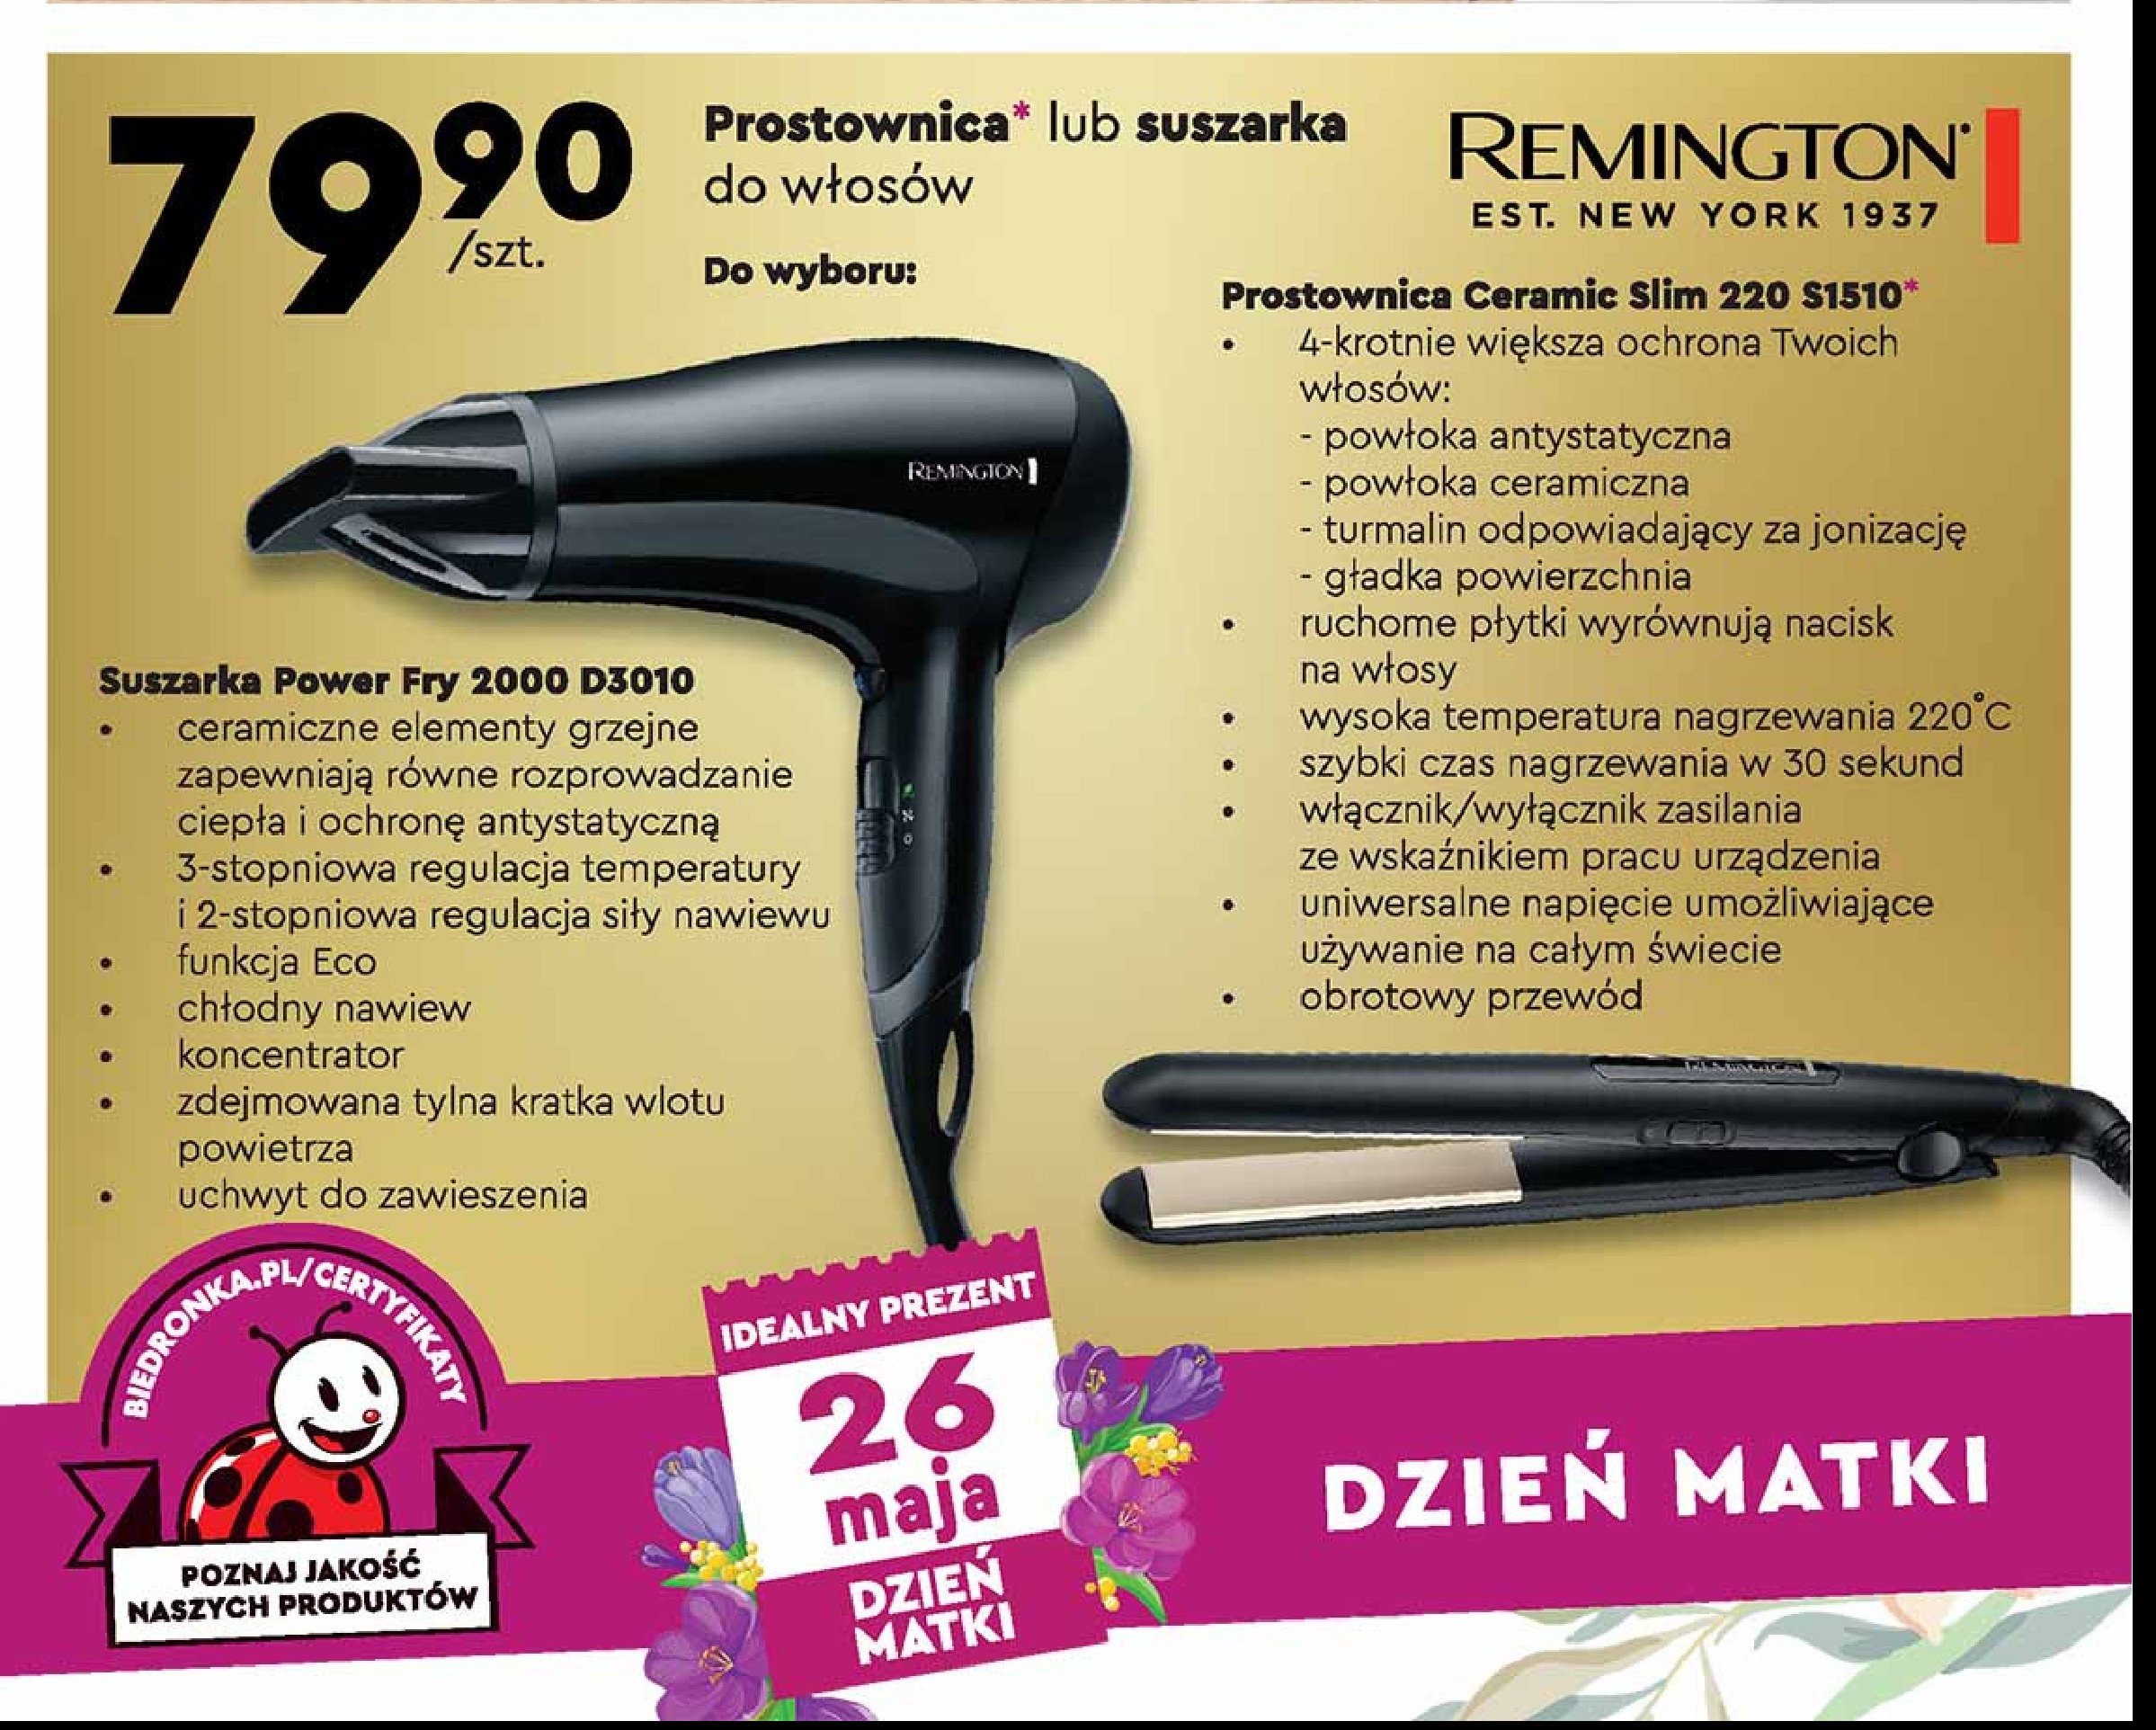 Suszarka do włosów power dry 2000 d3010 Remington promocja